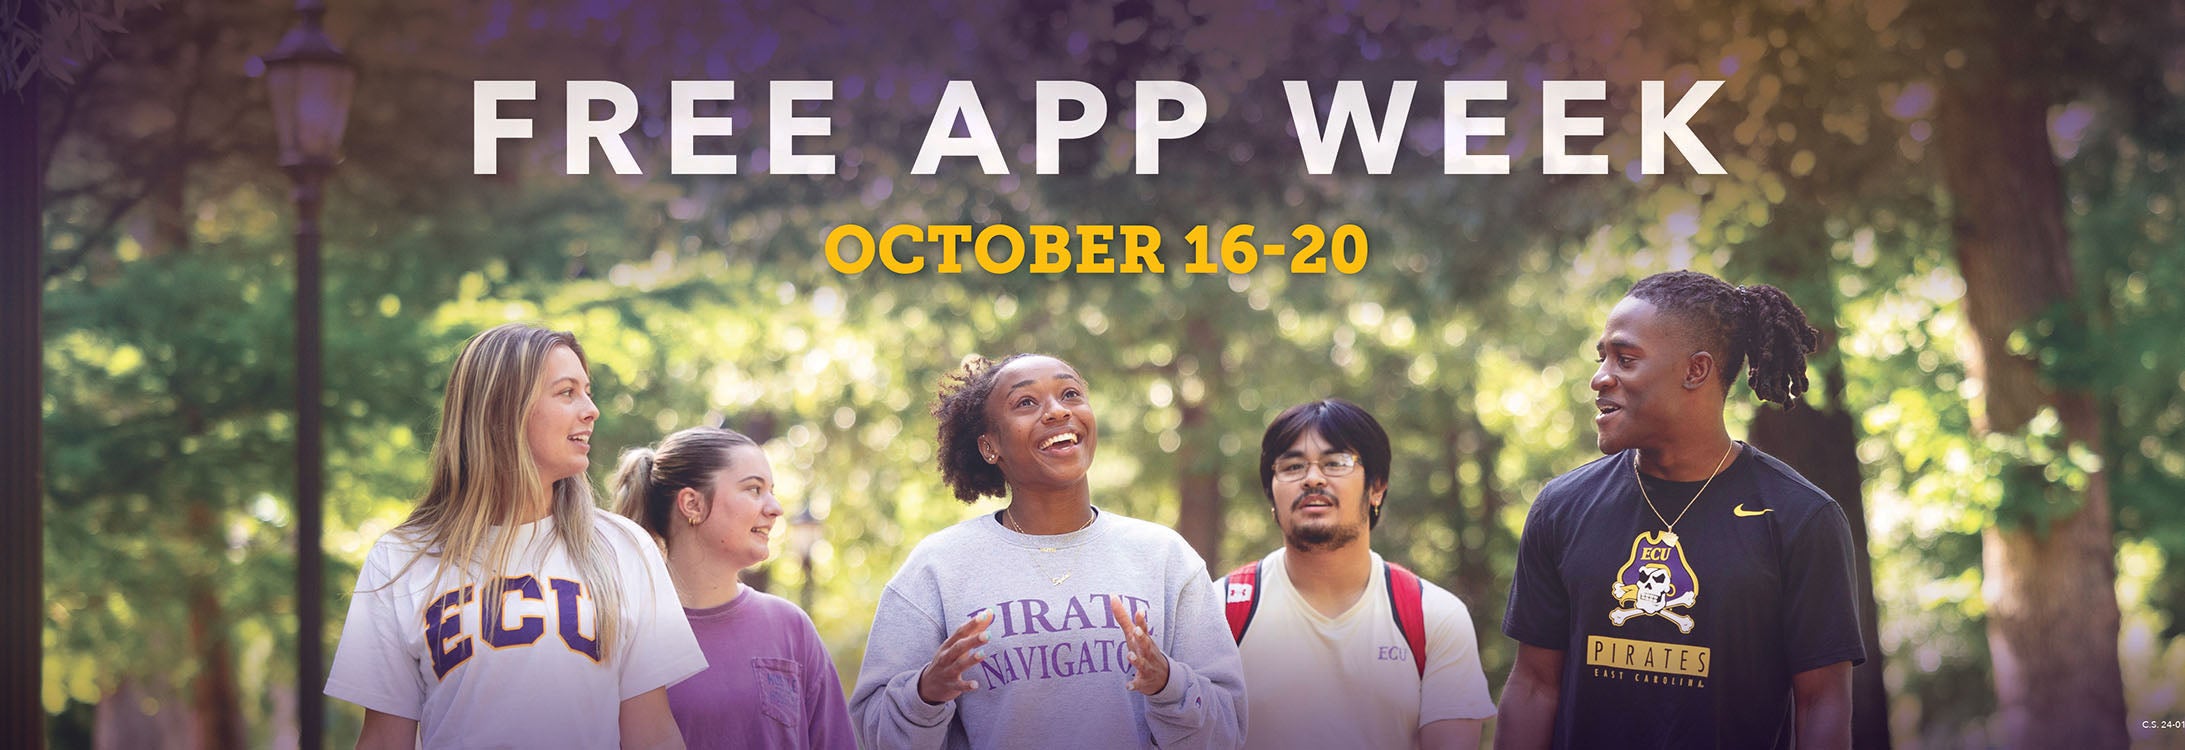 Free App Week | October 16-20